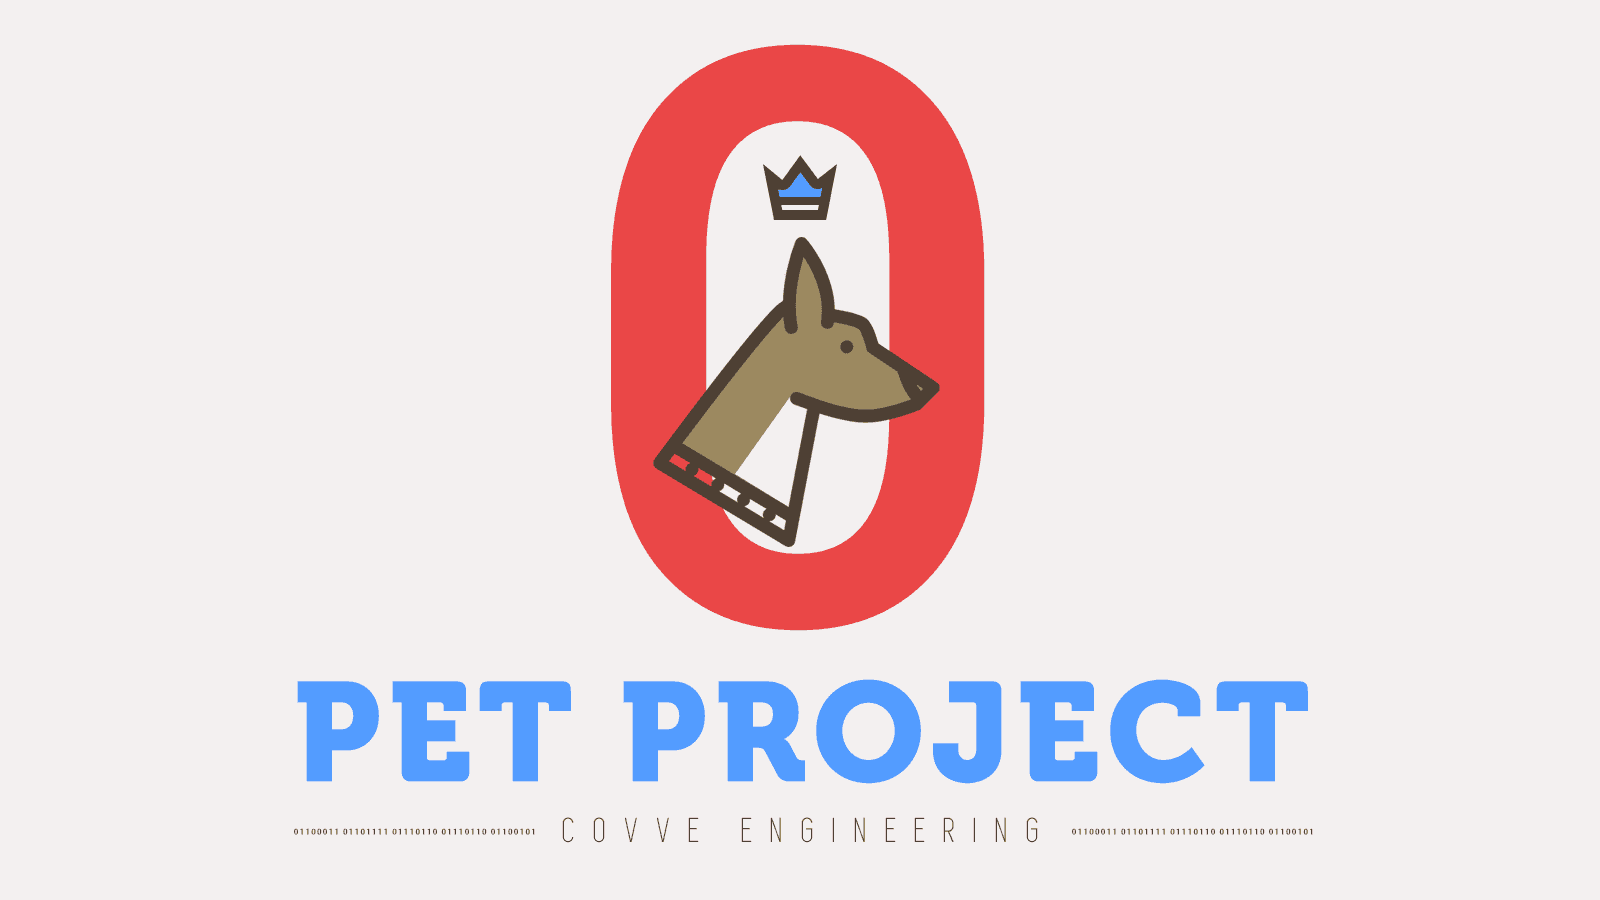 Pet project day - Feb 17 - Anti-patterns, PWA and push notifications